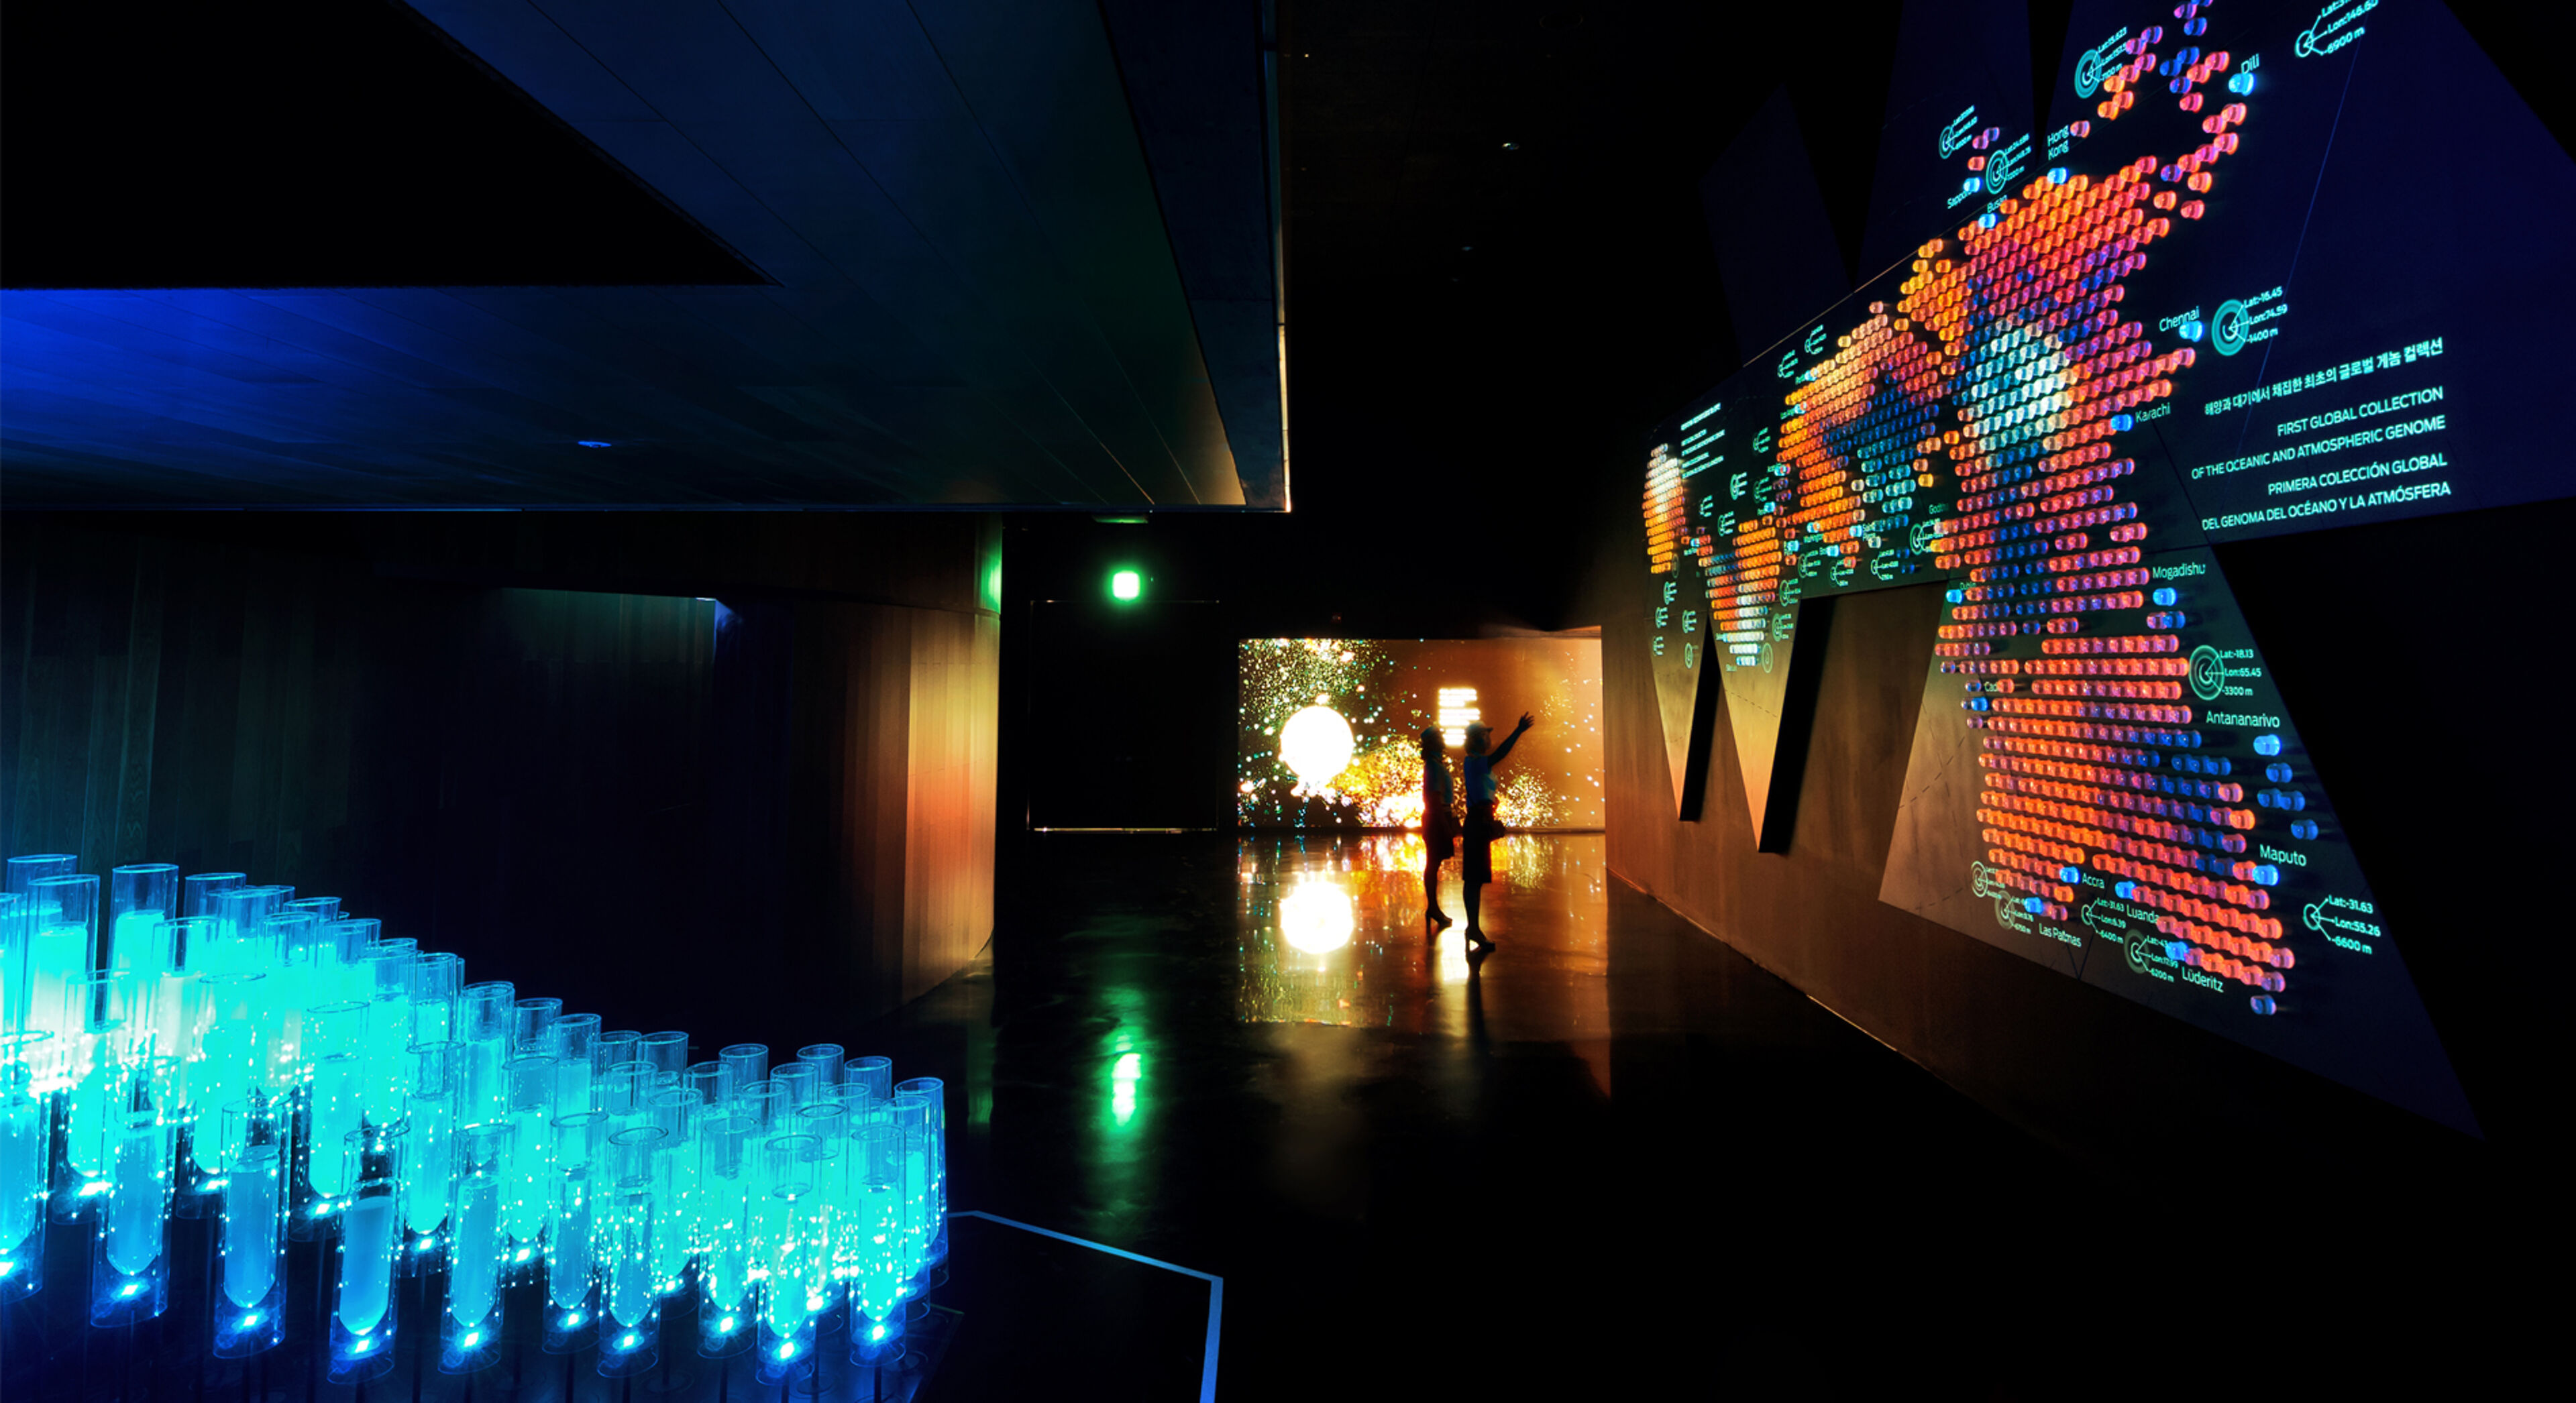 Una sala fosca il·luminada per una instal·lació de llum interactiva amb pantalles visuals vibrants i la silueta d'una persona interactuant amb l'exposició.